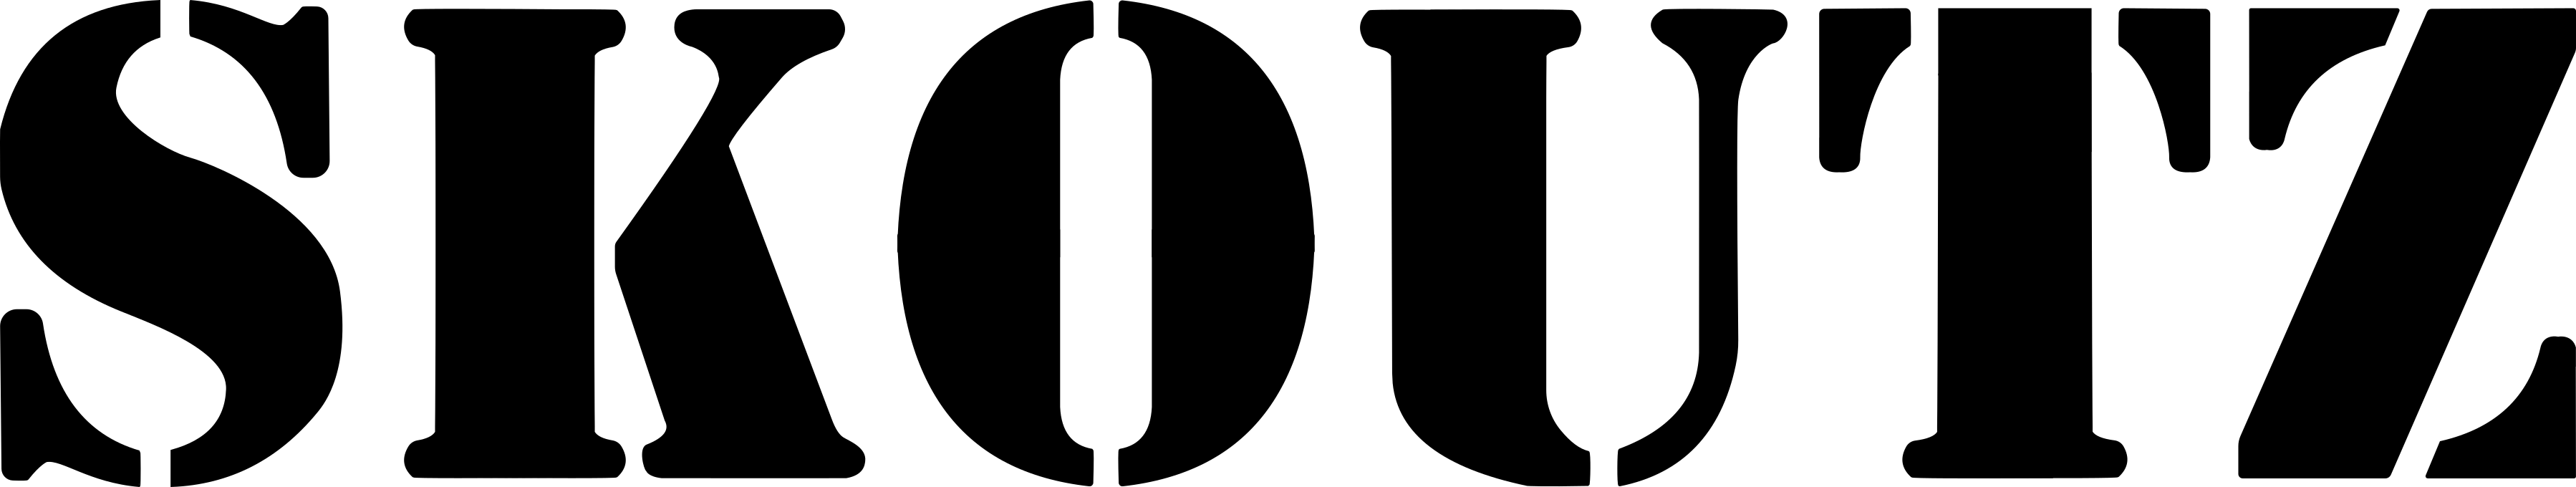 Skoutz Logo mit Schriftzug (300dpi)